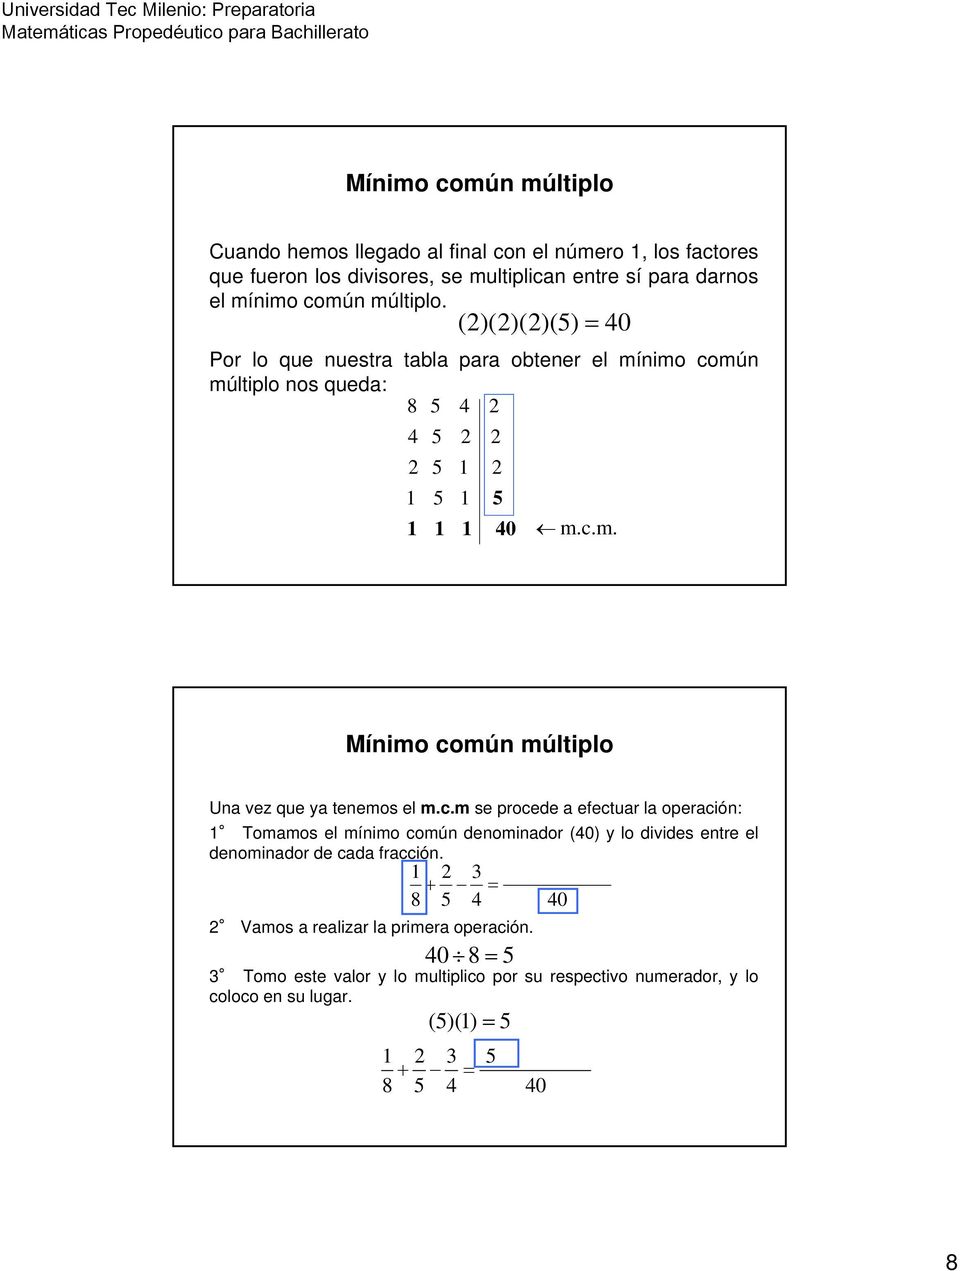 c.m se procede a efectuar la operación: Tomamos el mínimo común denominador (0) y lo divides entre el denominador de cada fracción.